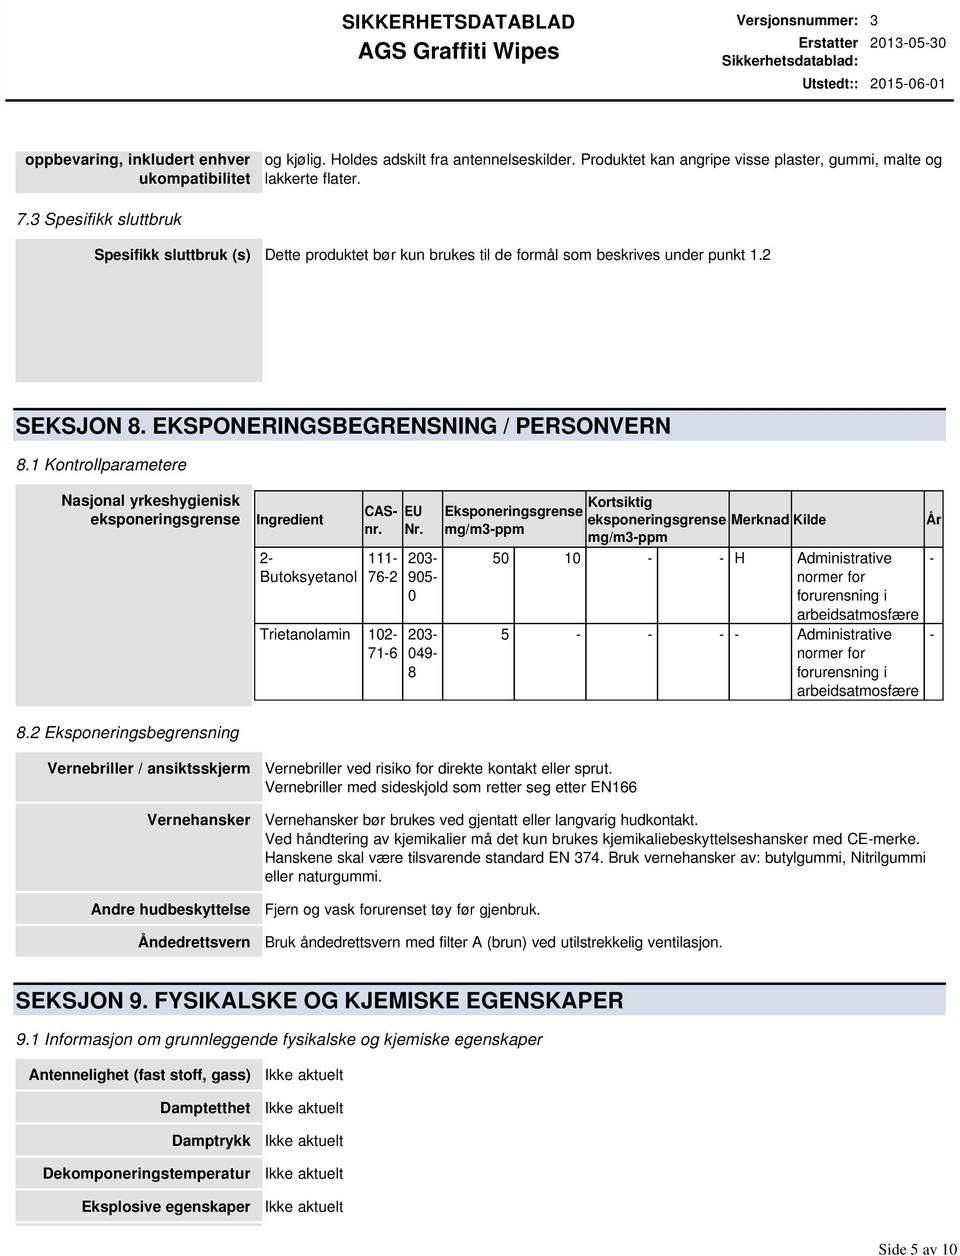 1 Kontrollparametere Nasjonal yrkeshygienisk eksponeringsgrense Ingredient 2- Butoksyetanol CASnr. 111-76-2 Trietanolamin 102-71-6 EU Nr.